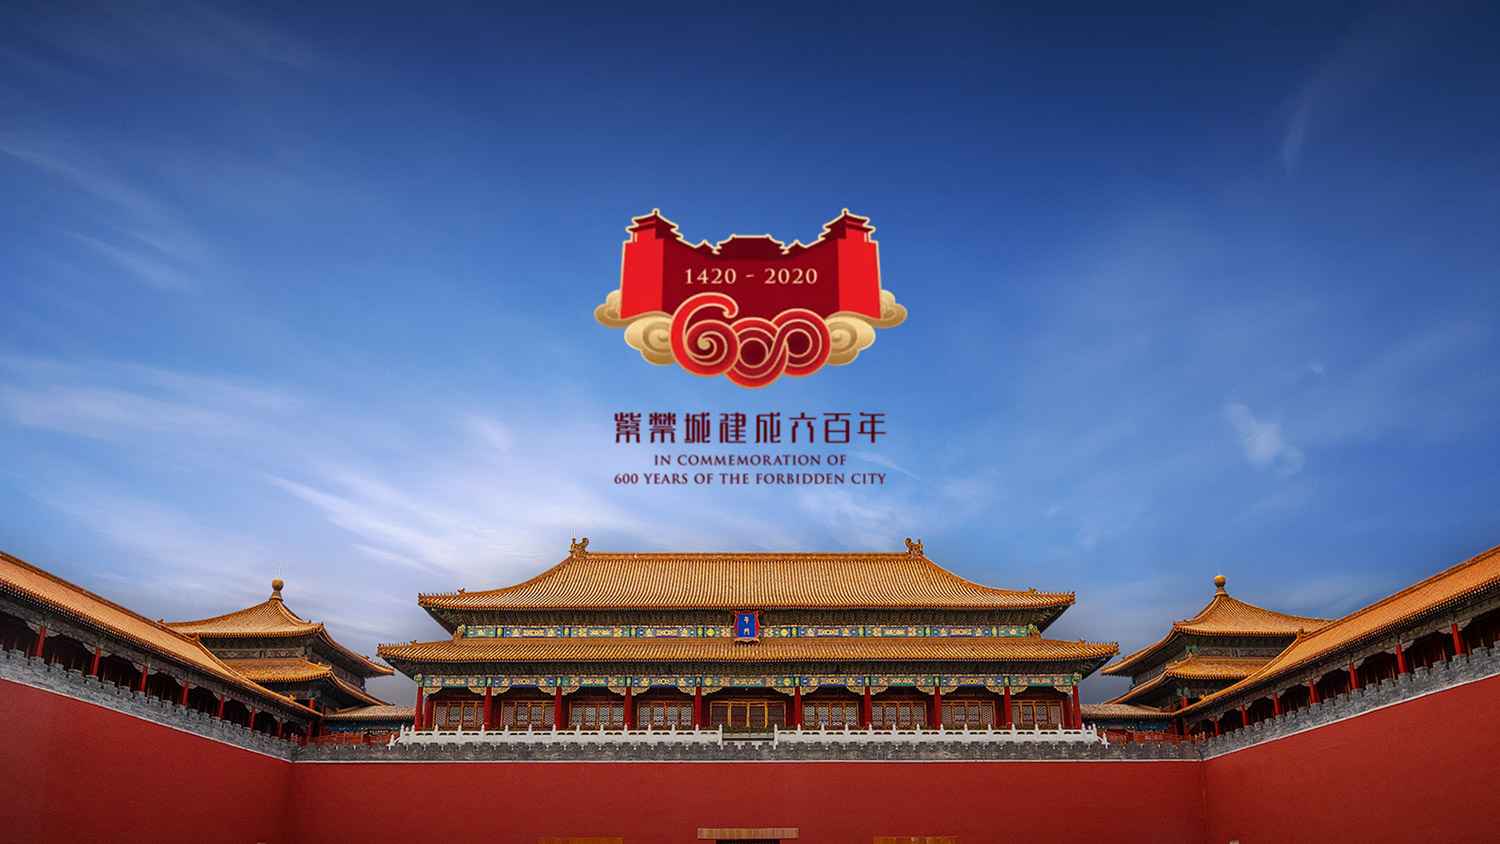 故宫博物馆紫禁城建立600年纪念新logo